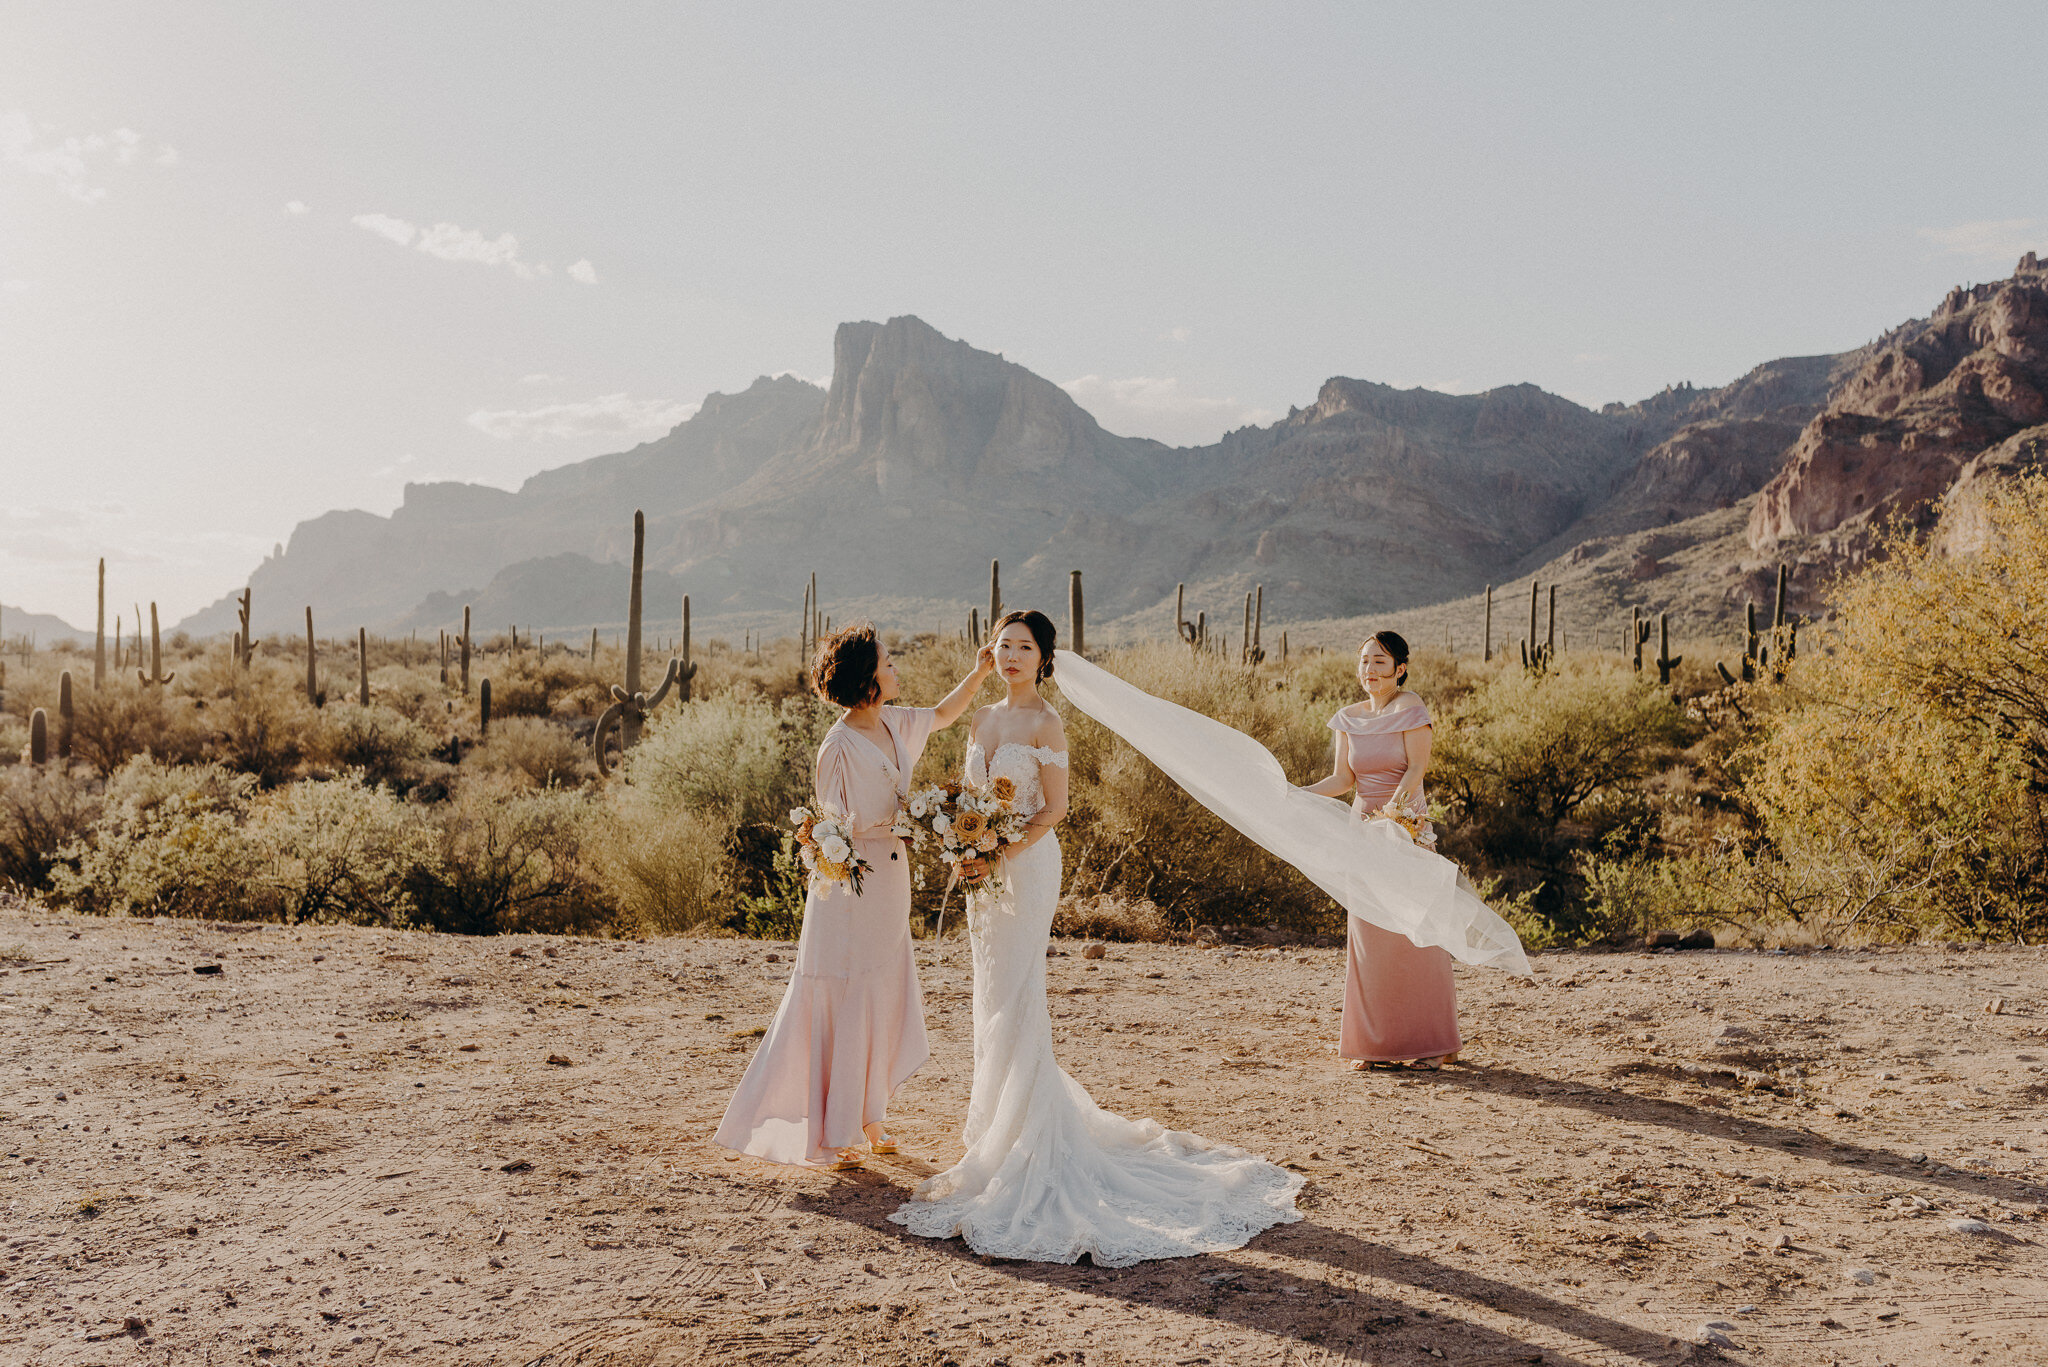 california wedding photograhers - desert elopement - supersition mountains - isaiahandtaylor.com-83.jpg